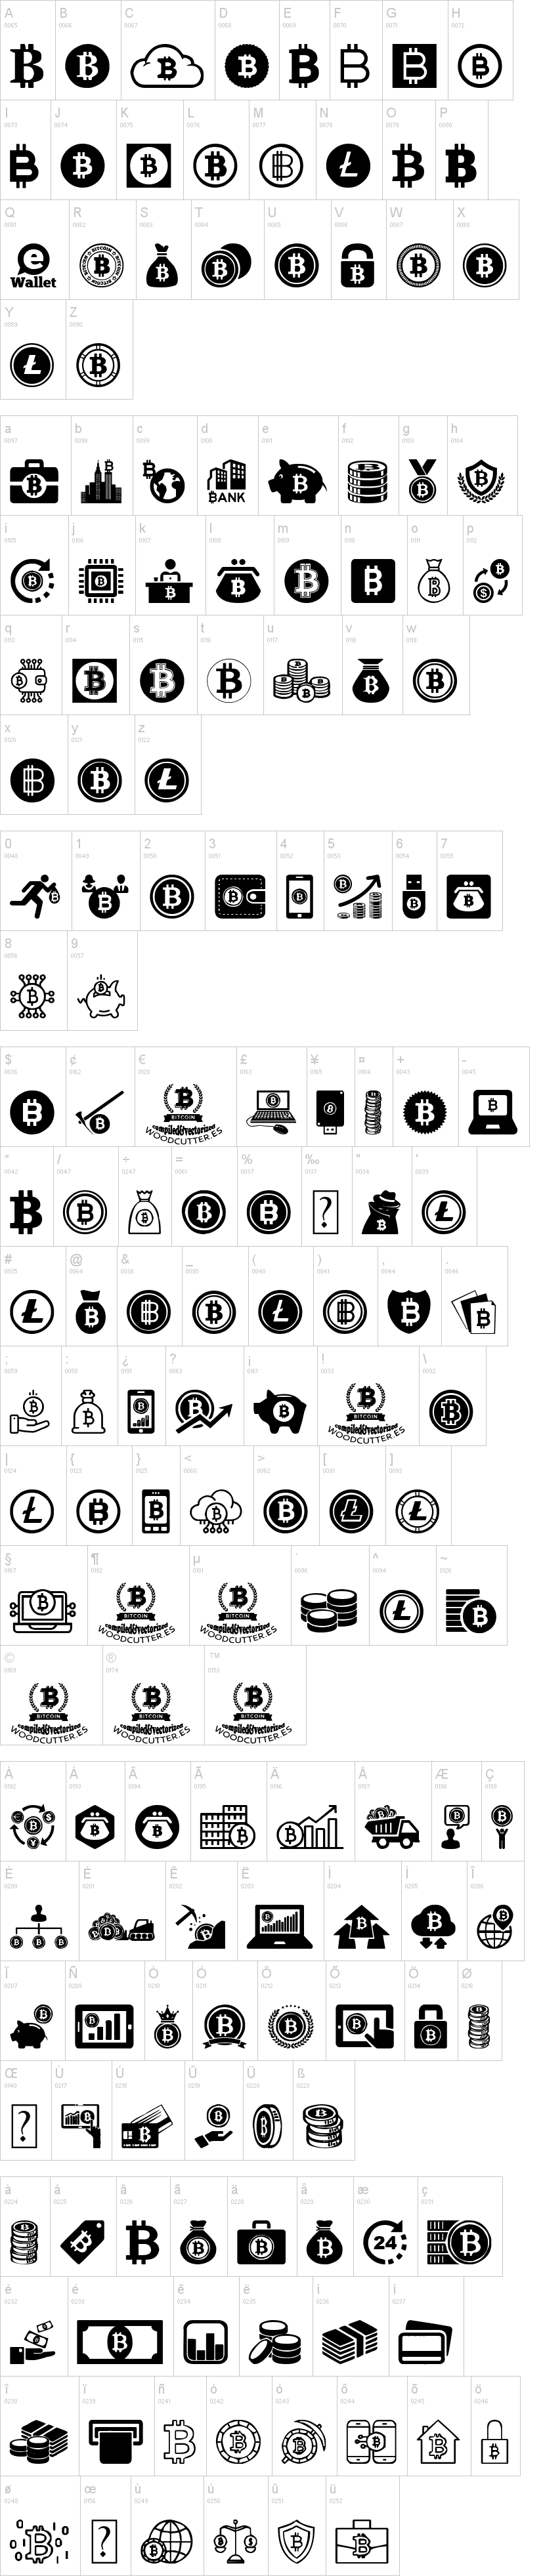 bitcoin font